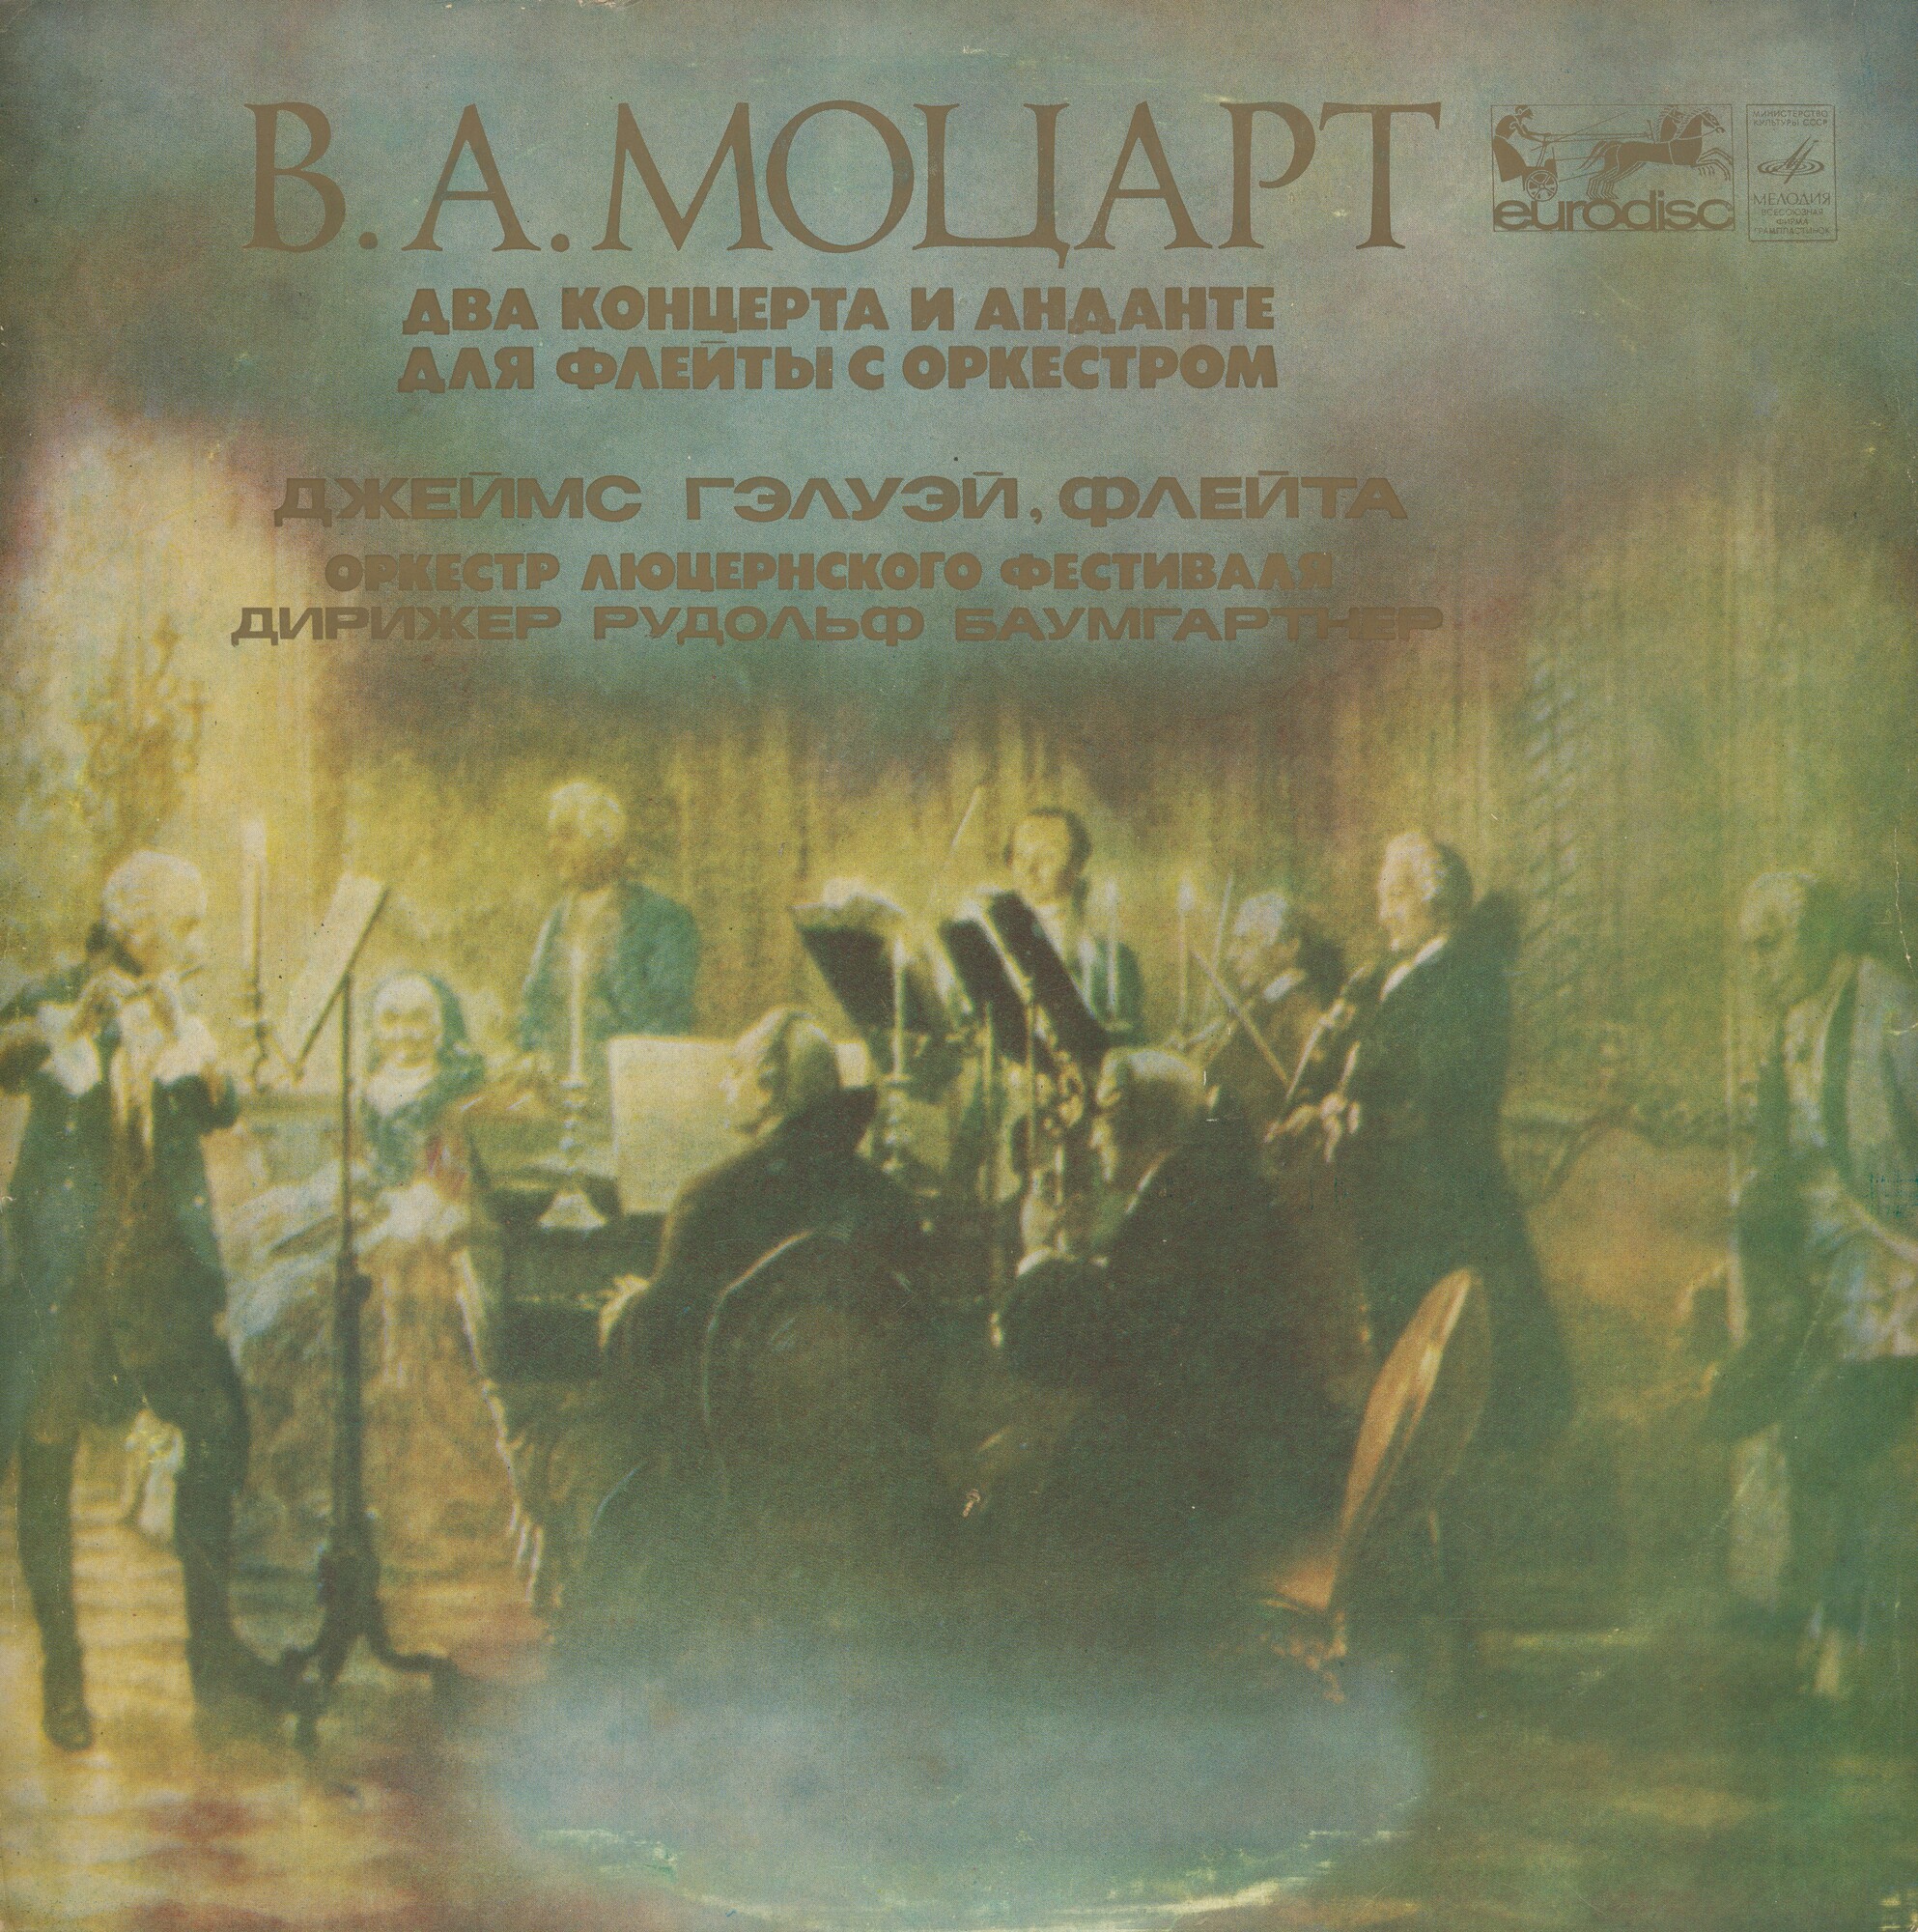 В. А. Моцарт: Два концерта и анданте для флейты с оркестром (Дж. Гэлуэй)